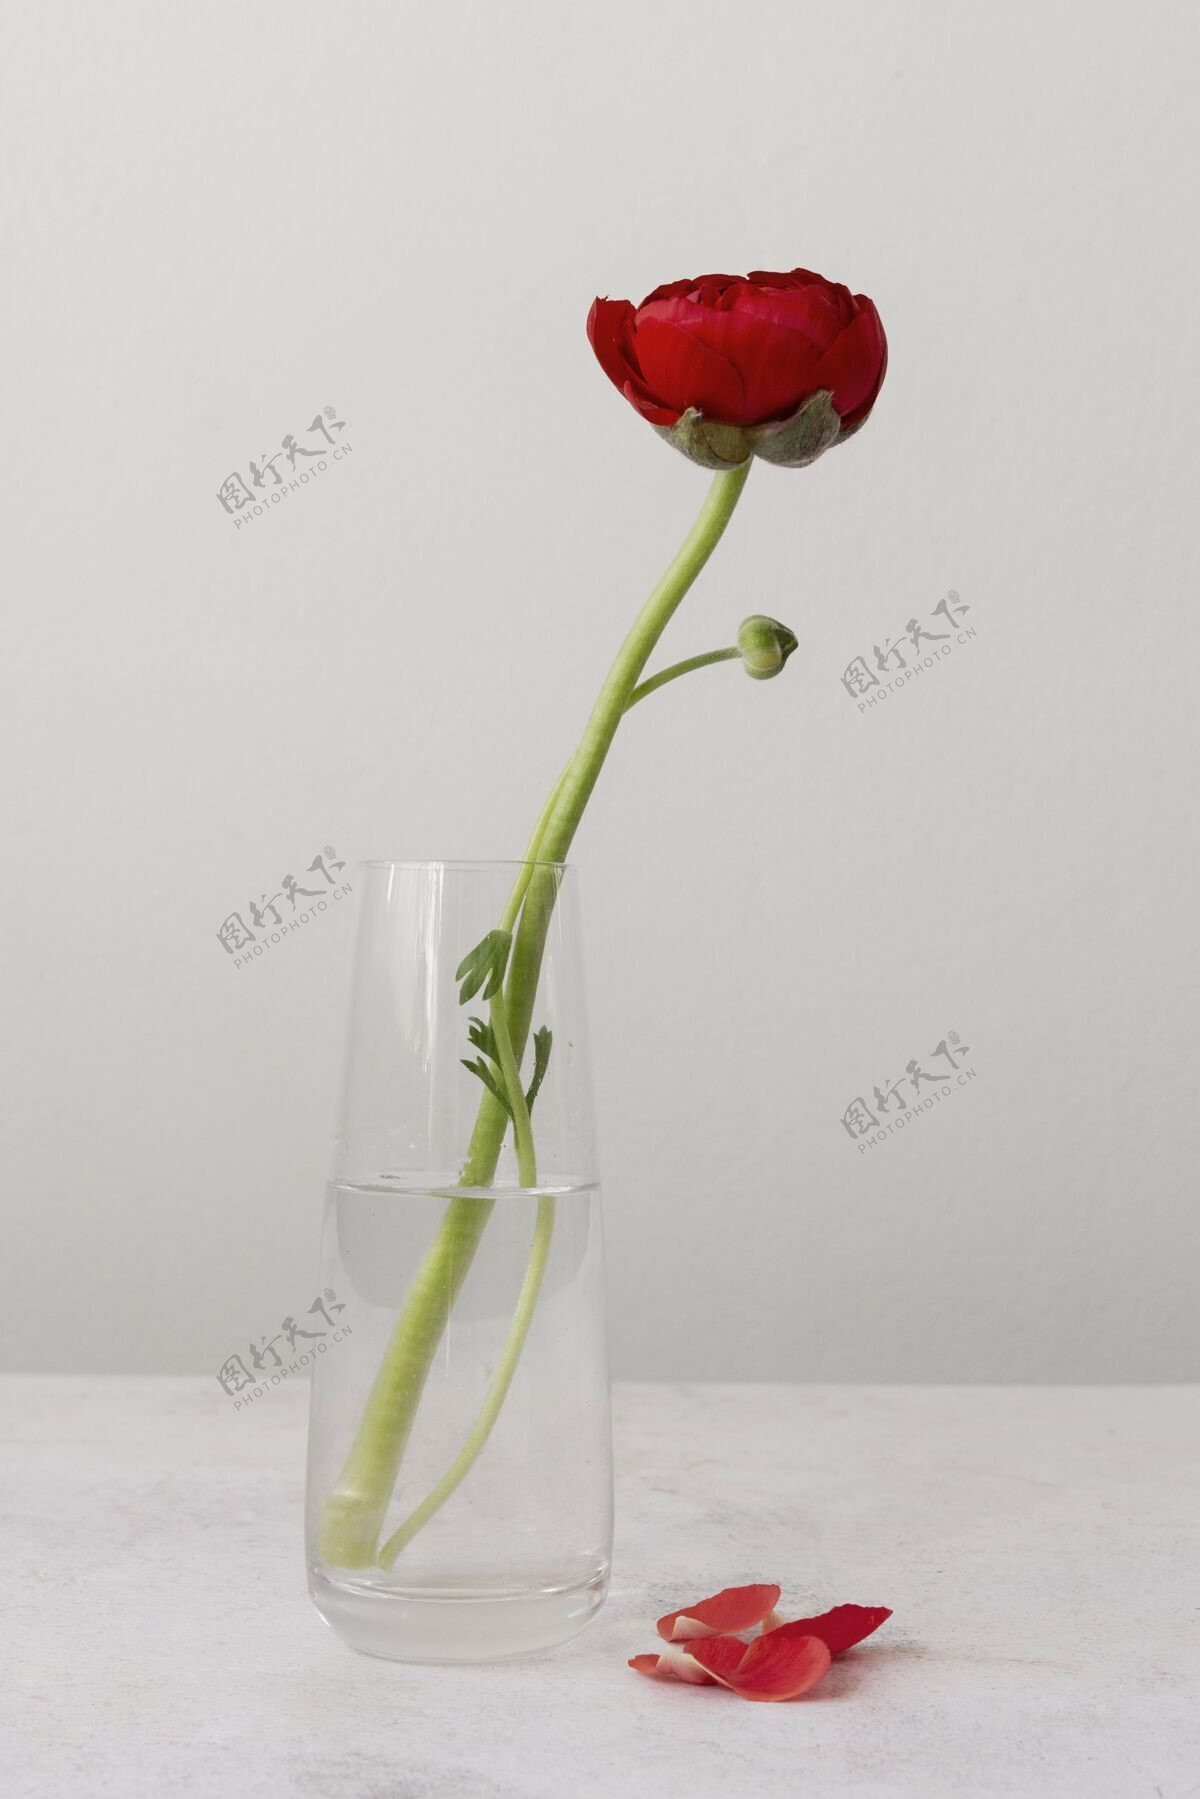 构图花瓶内花的静物布置生长开花排列